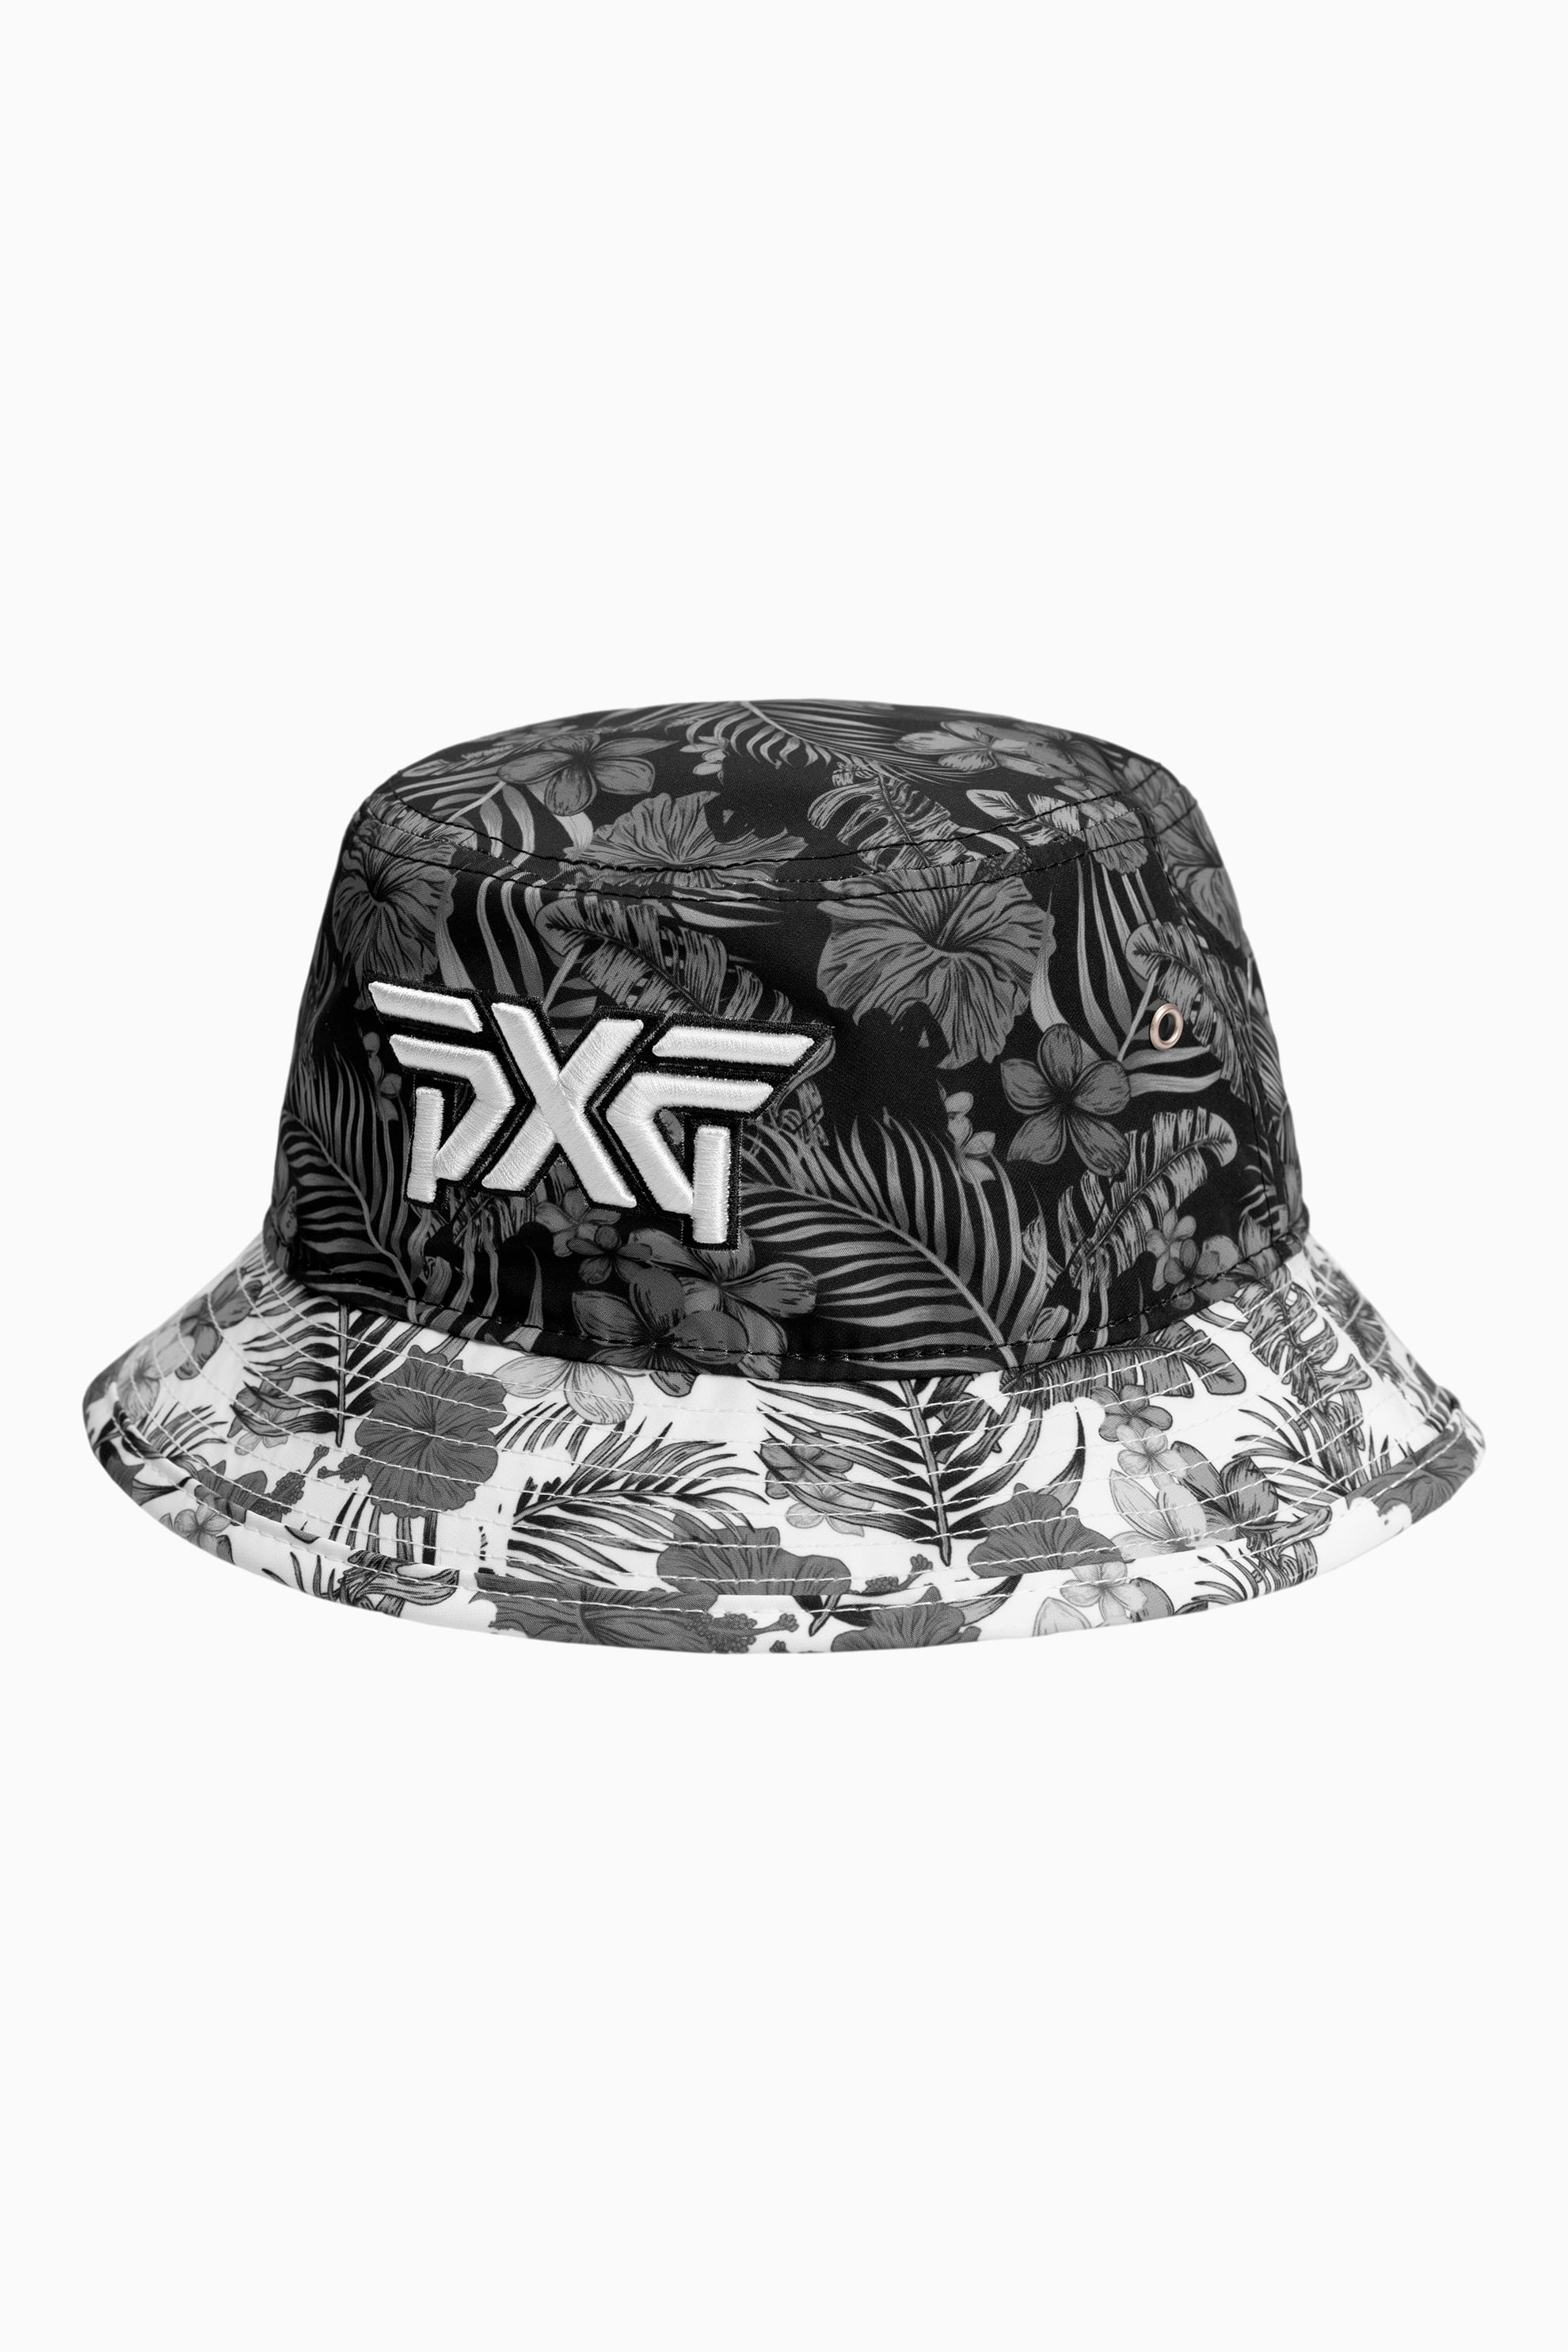 Buy Aloha 2022 Bucket Hat | PXG